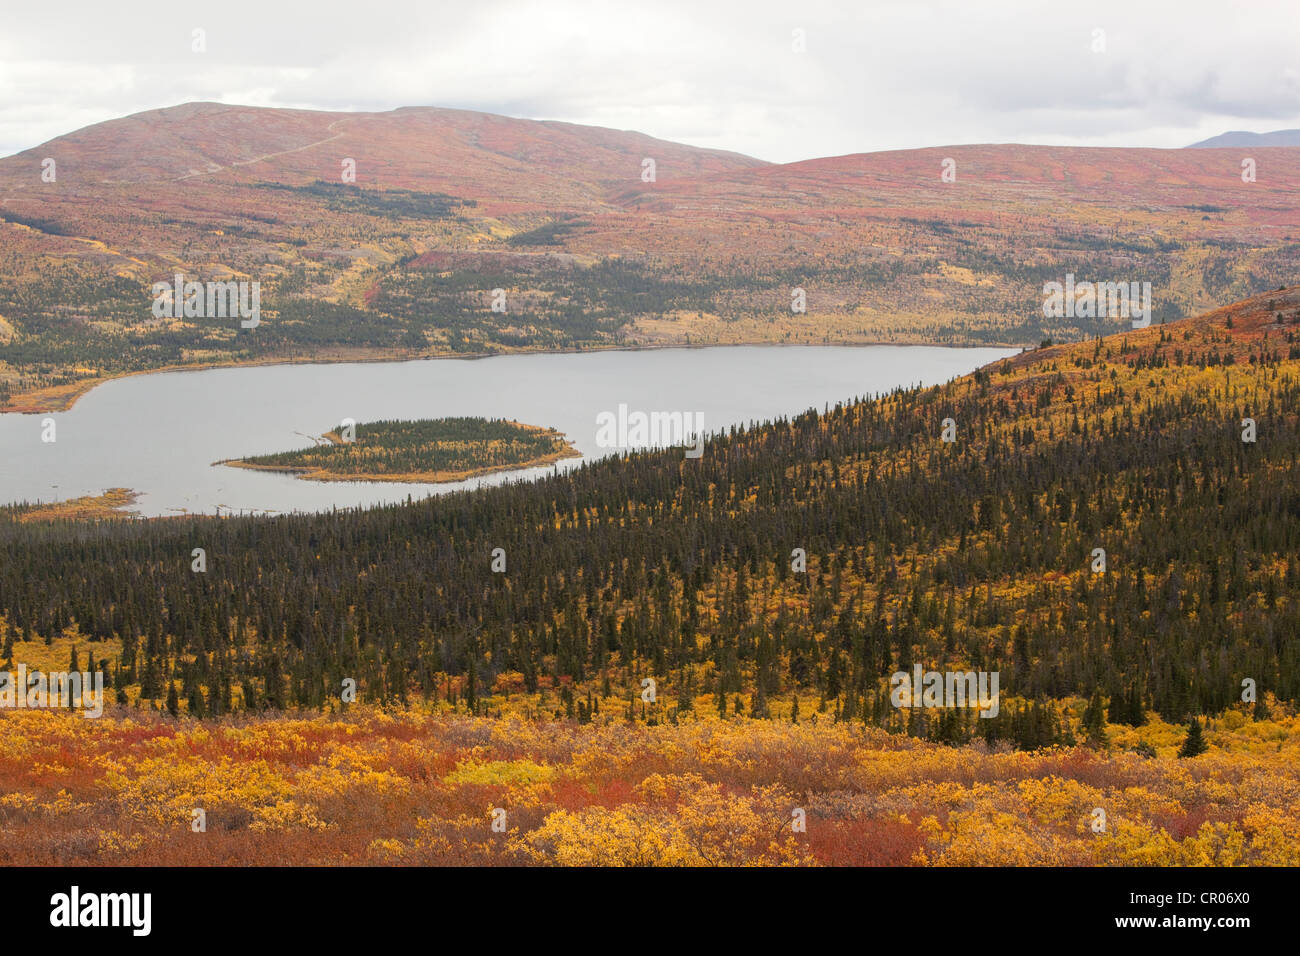 Vue, panorama sur le lac et les environs de poissons sous-toundra alpine, l'été indien, les feuilles en couleurs d'automne, automne, Territoire du Yukon Banque D'Images